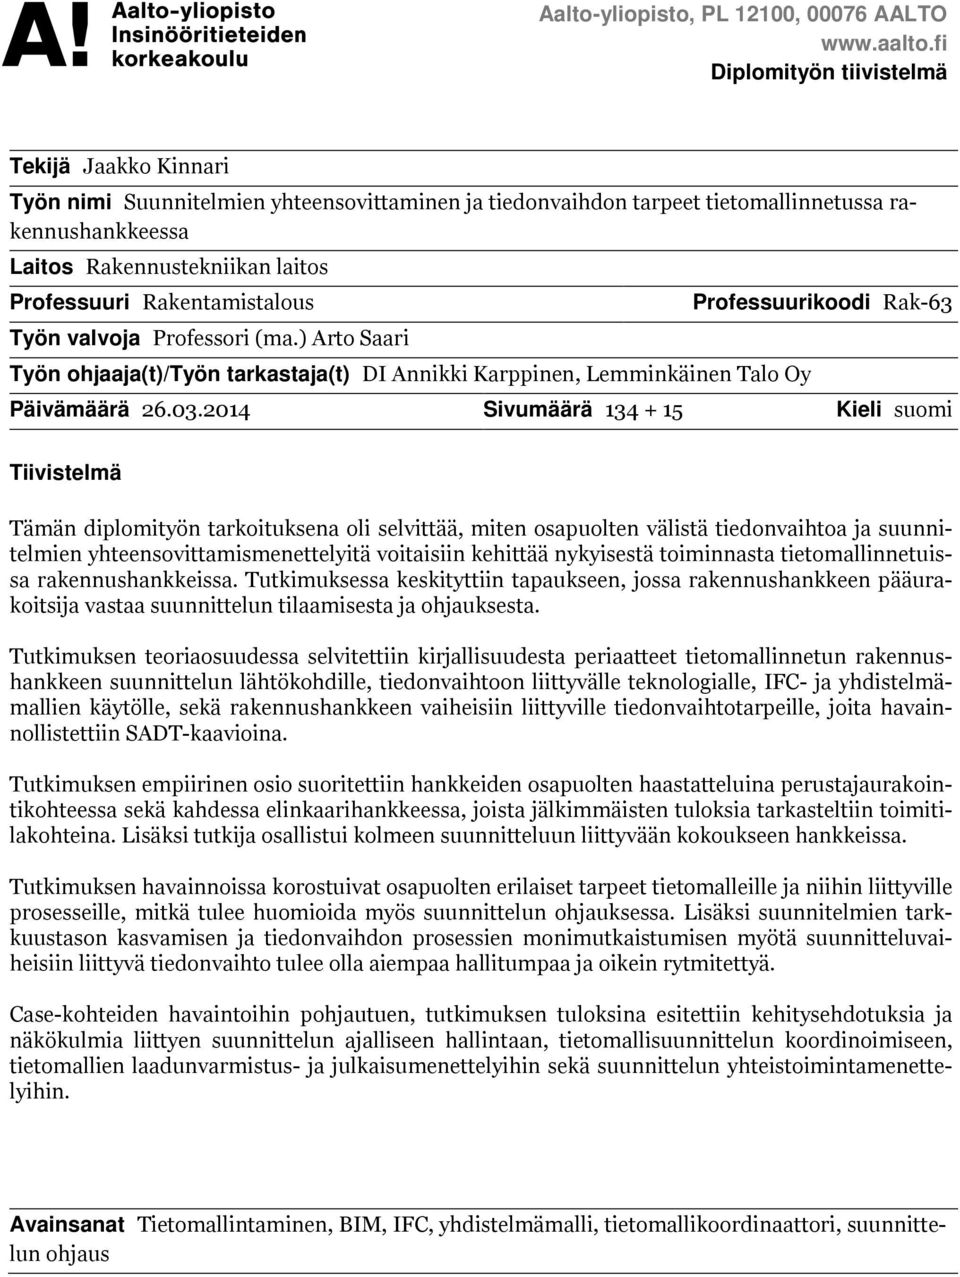 Rakentamistalous Työn valvoja Professori (ma.) Arto Saari Työn ohjaaja(t)/työn tarkastaja(t) DI Annikki Karppinen, Lemminkäinen Talo Oy Professuurikoodi Rak-63 Päivämäärä 26.03.